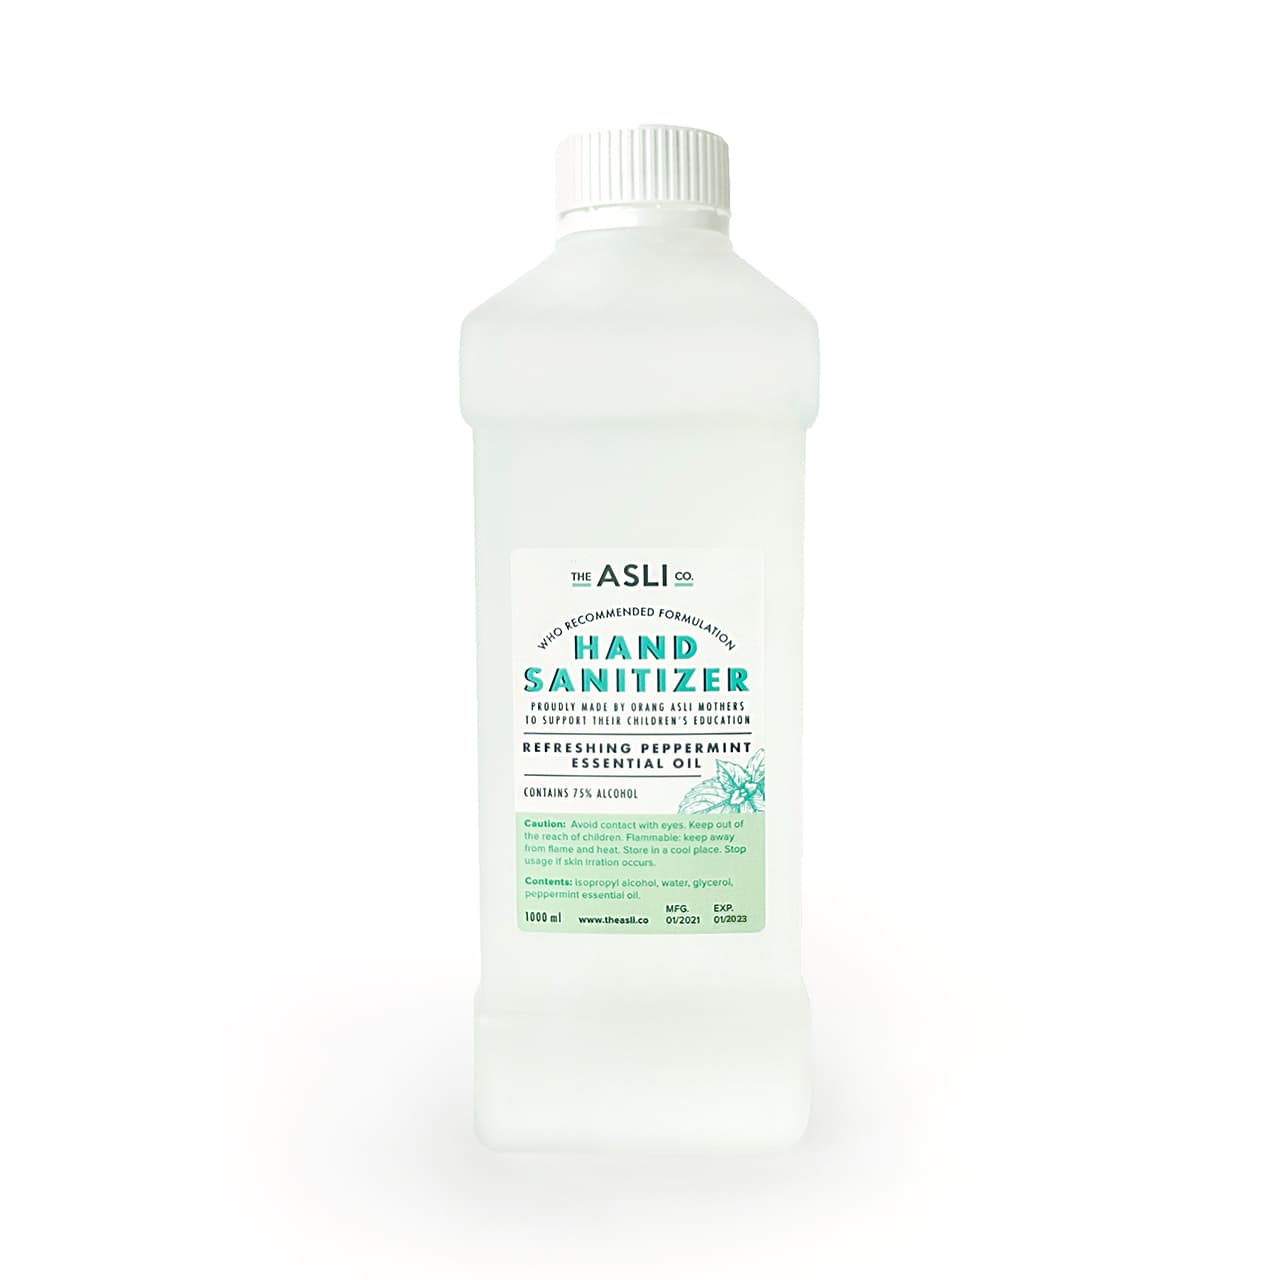 The Asli Co - Hand Sanitizer 1 Litre Refill bottle